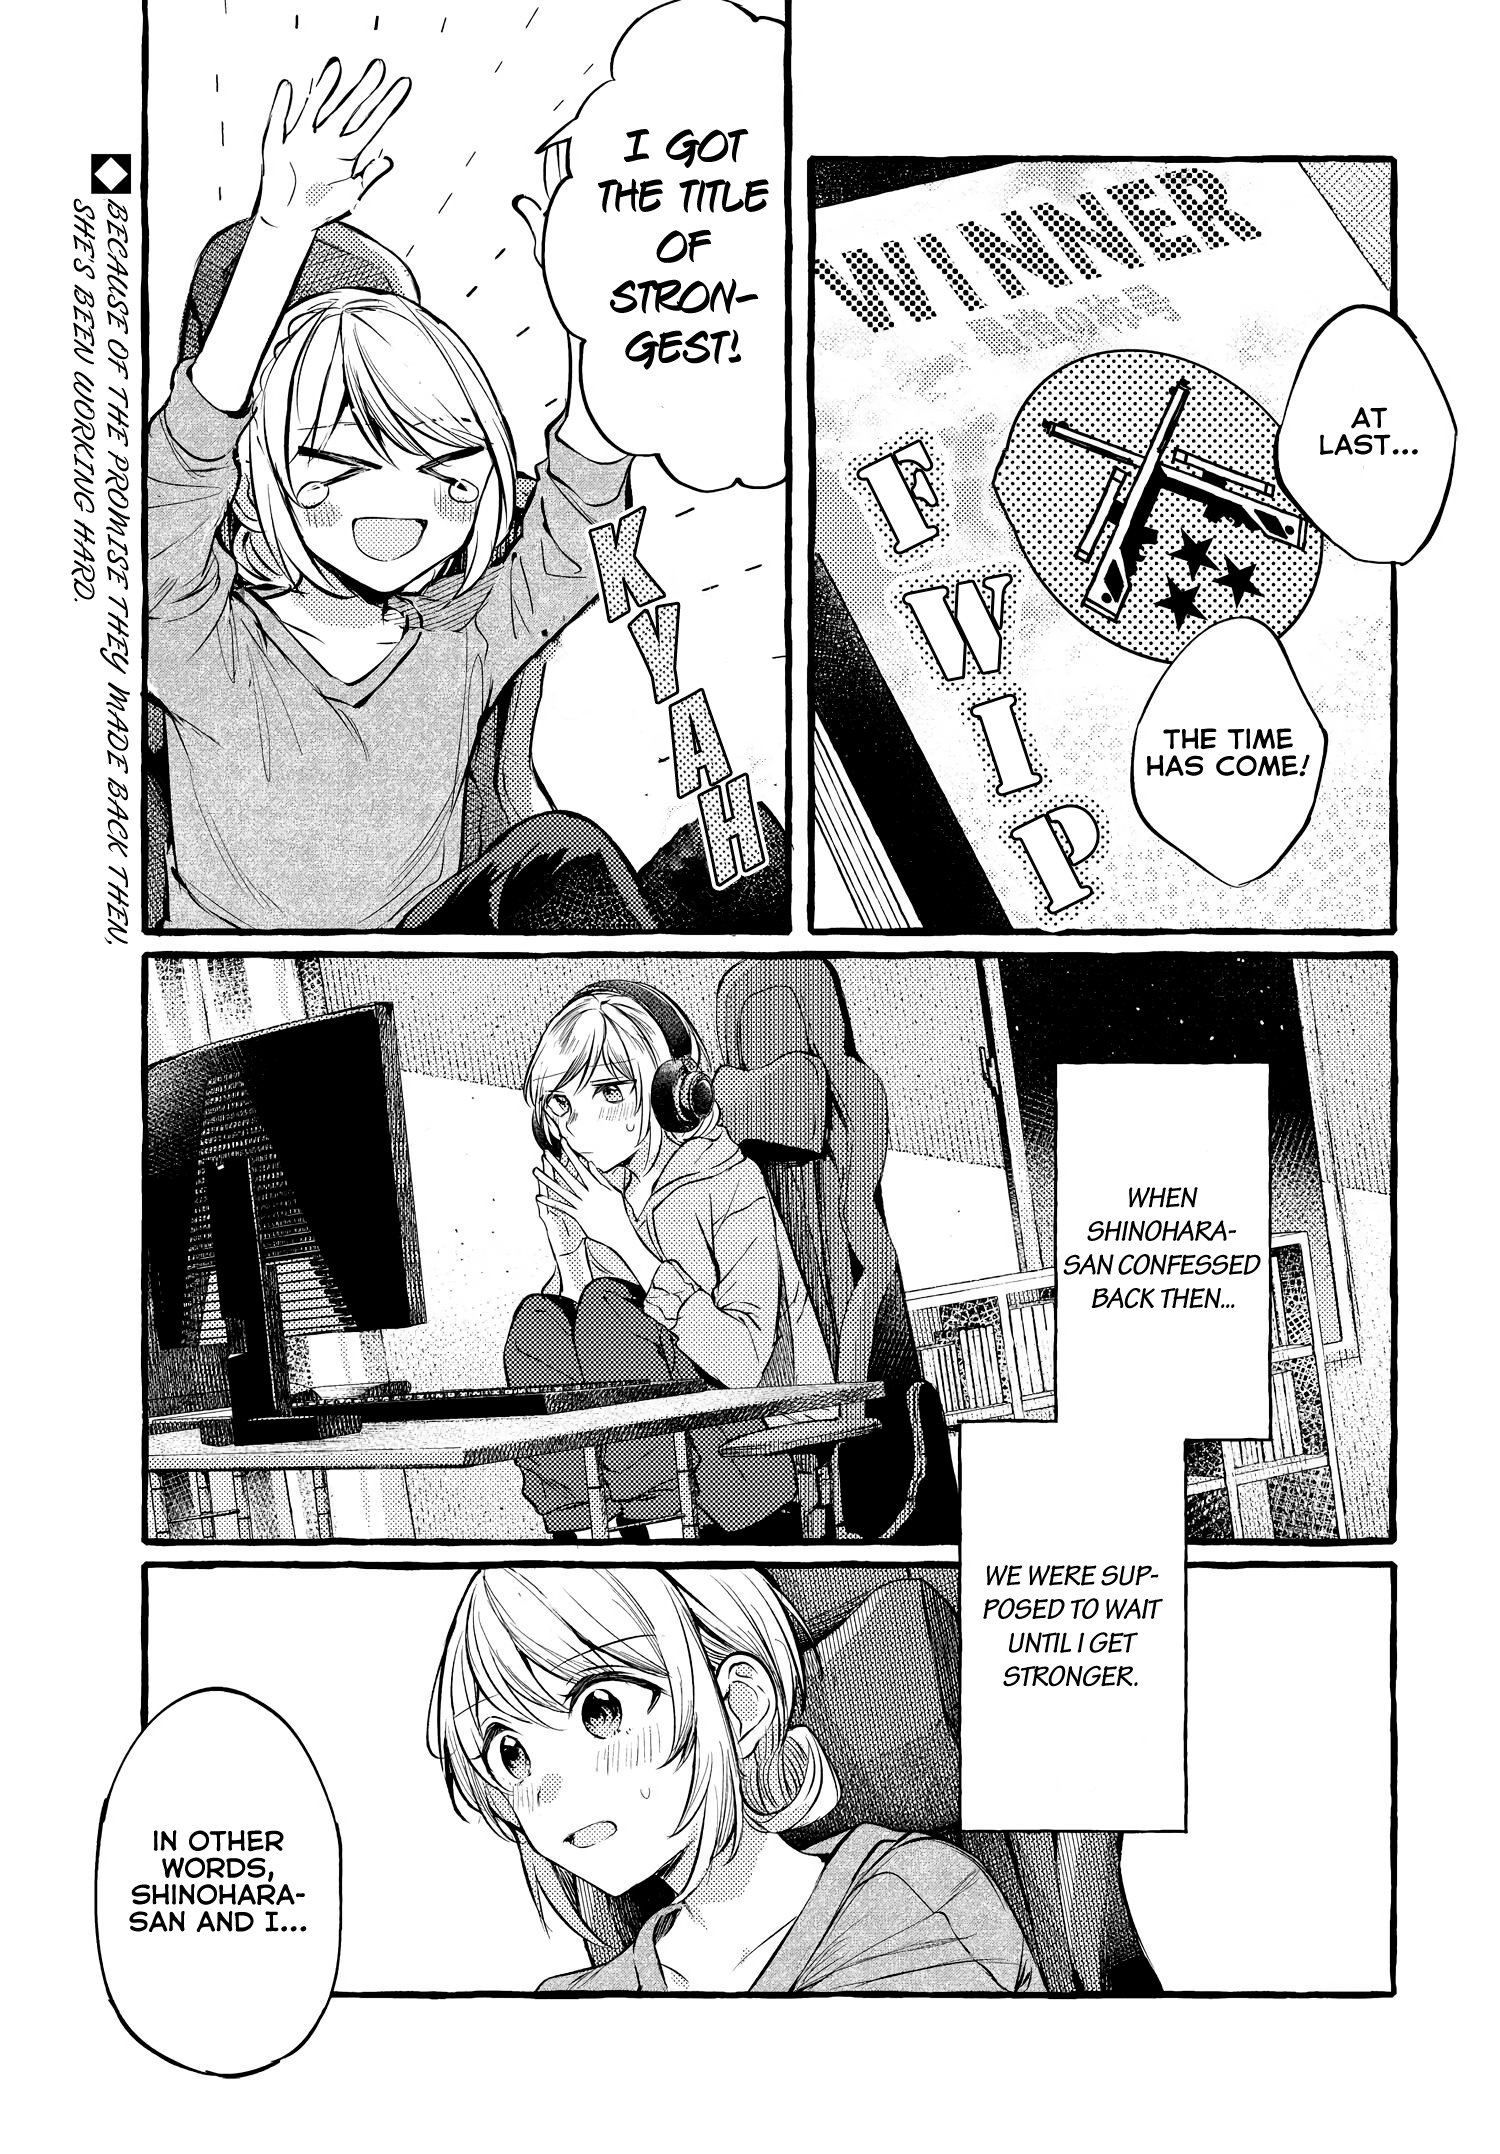 Fuzoroi No Renri - Side Stories - Page 1